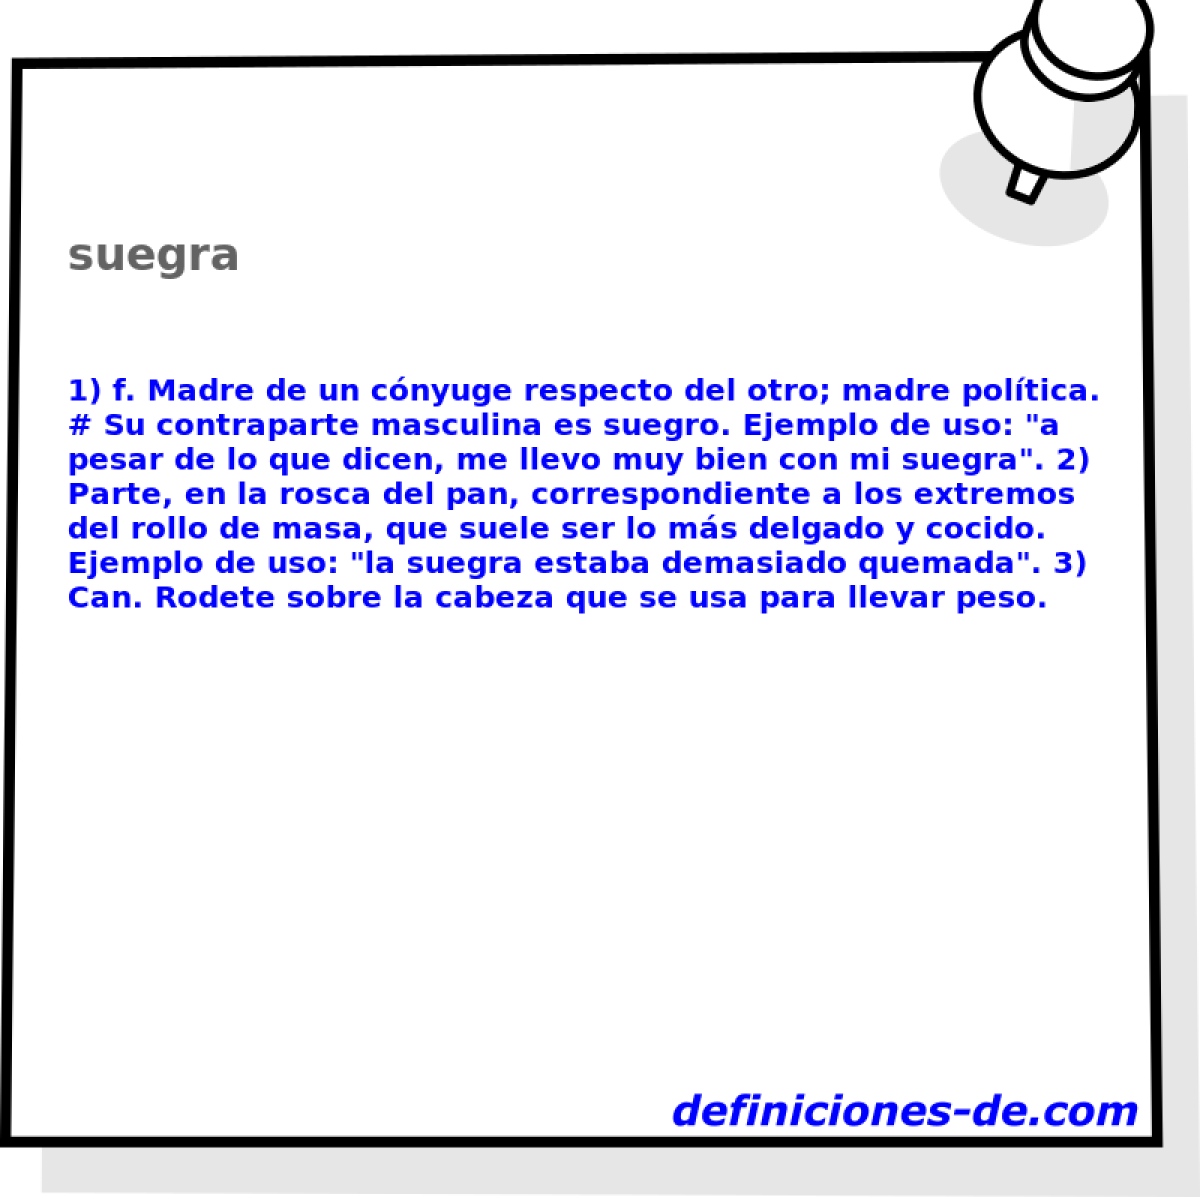 suegra 